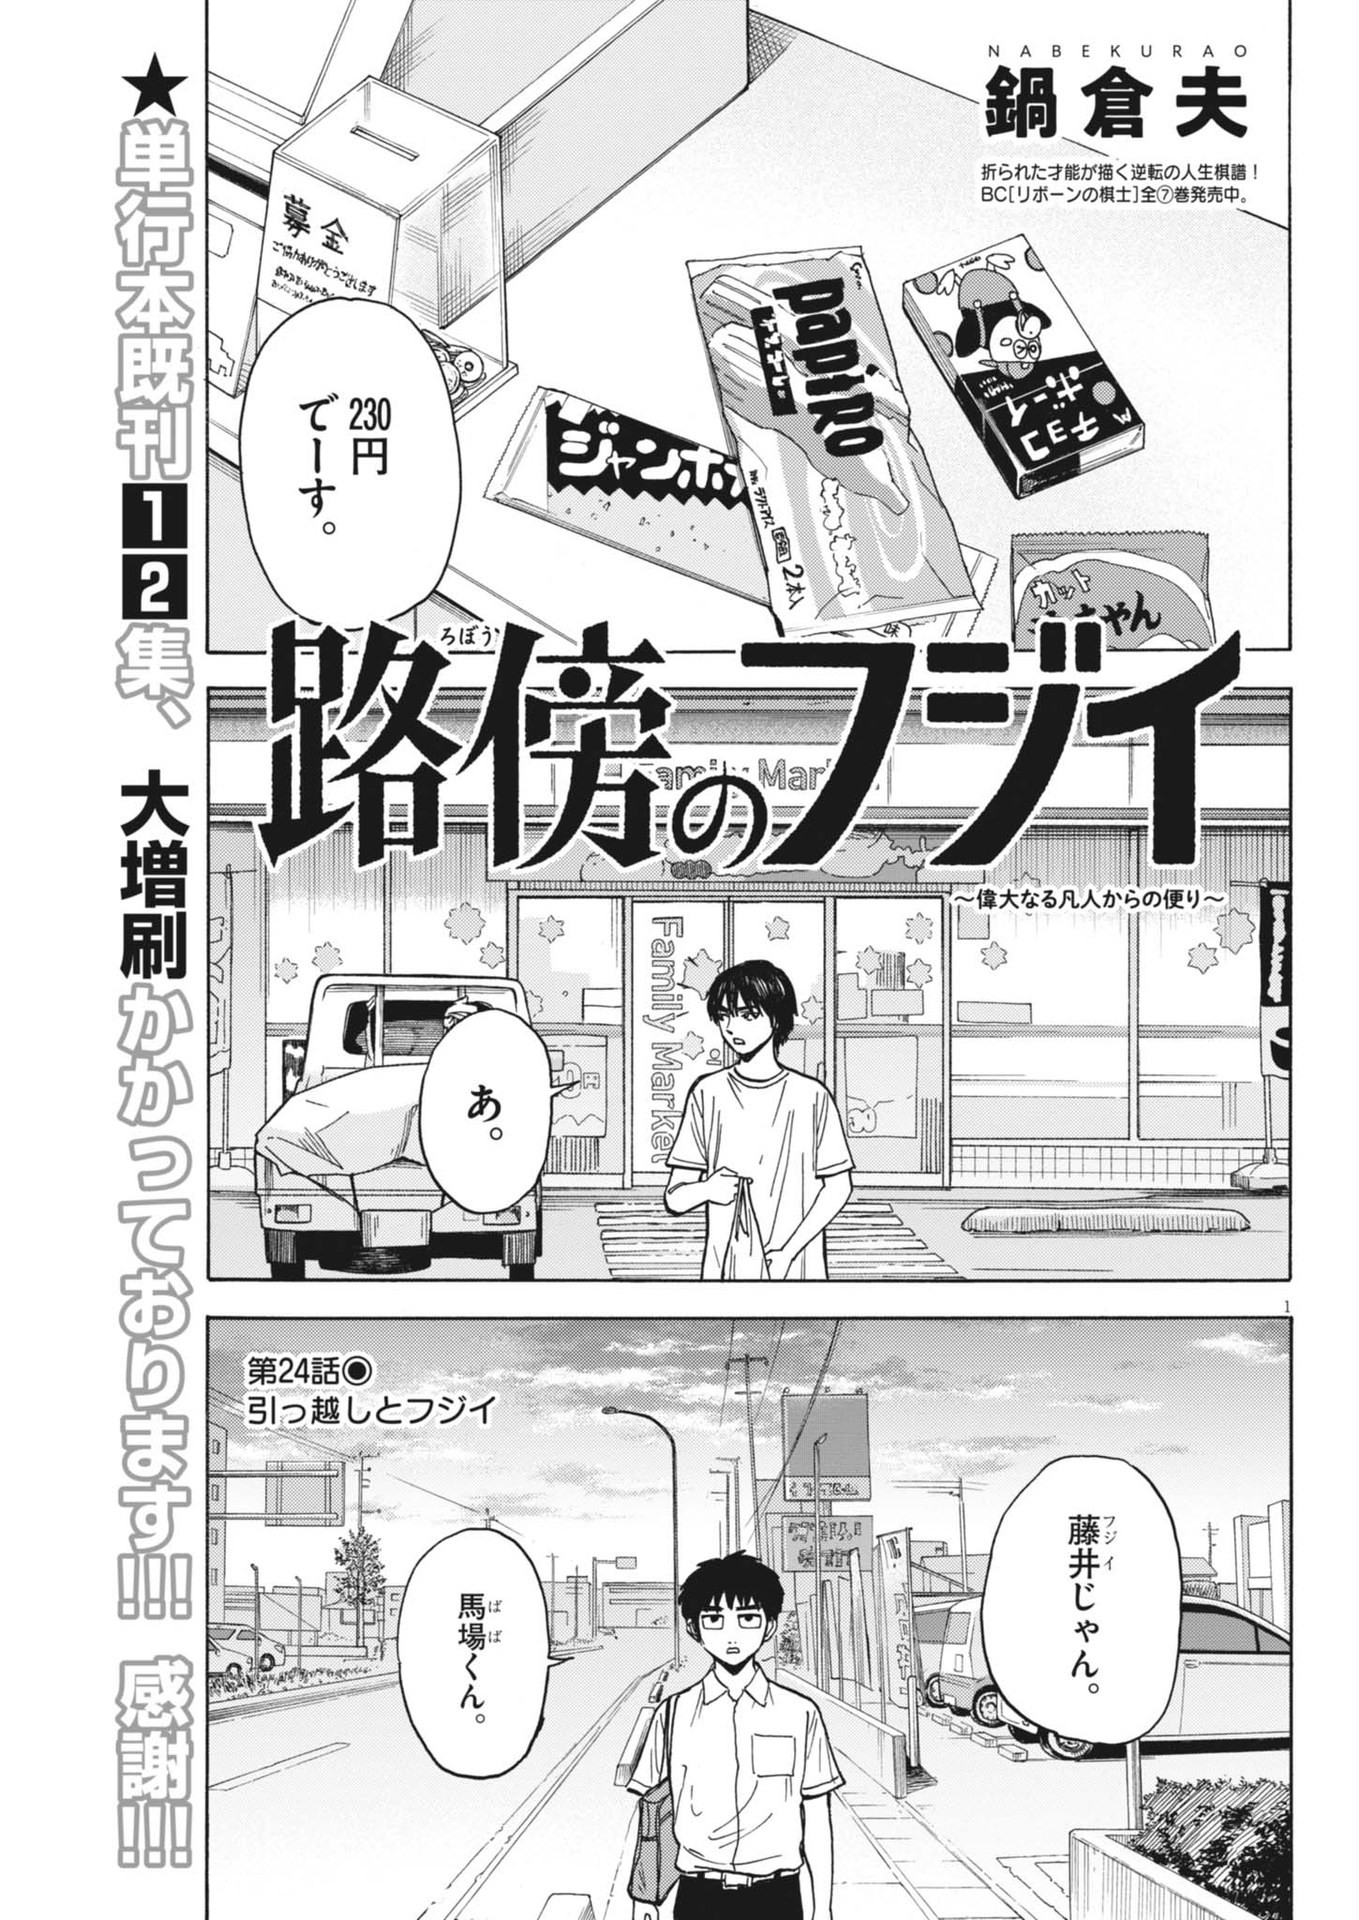 Robou no Fujii – Idai Naru Bonjin kara no Tayori - Chapter 24 - Page 1